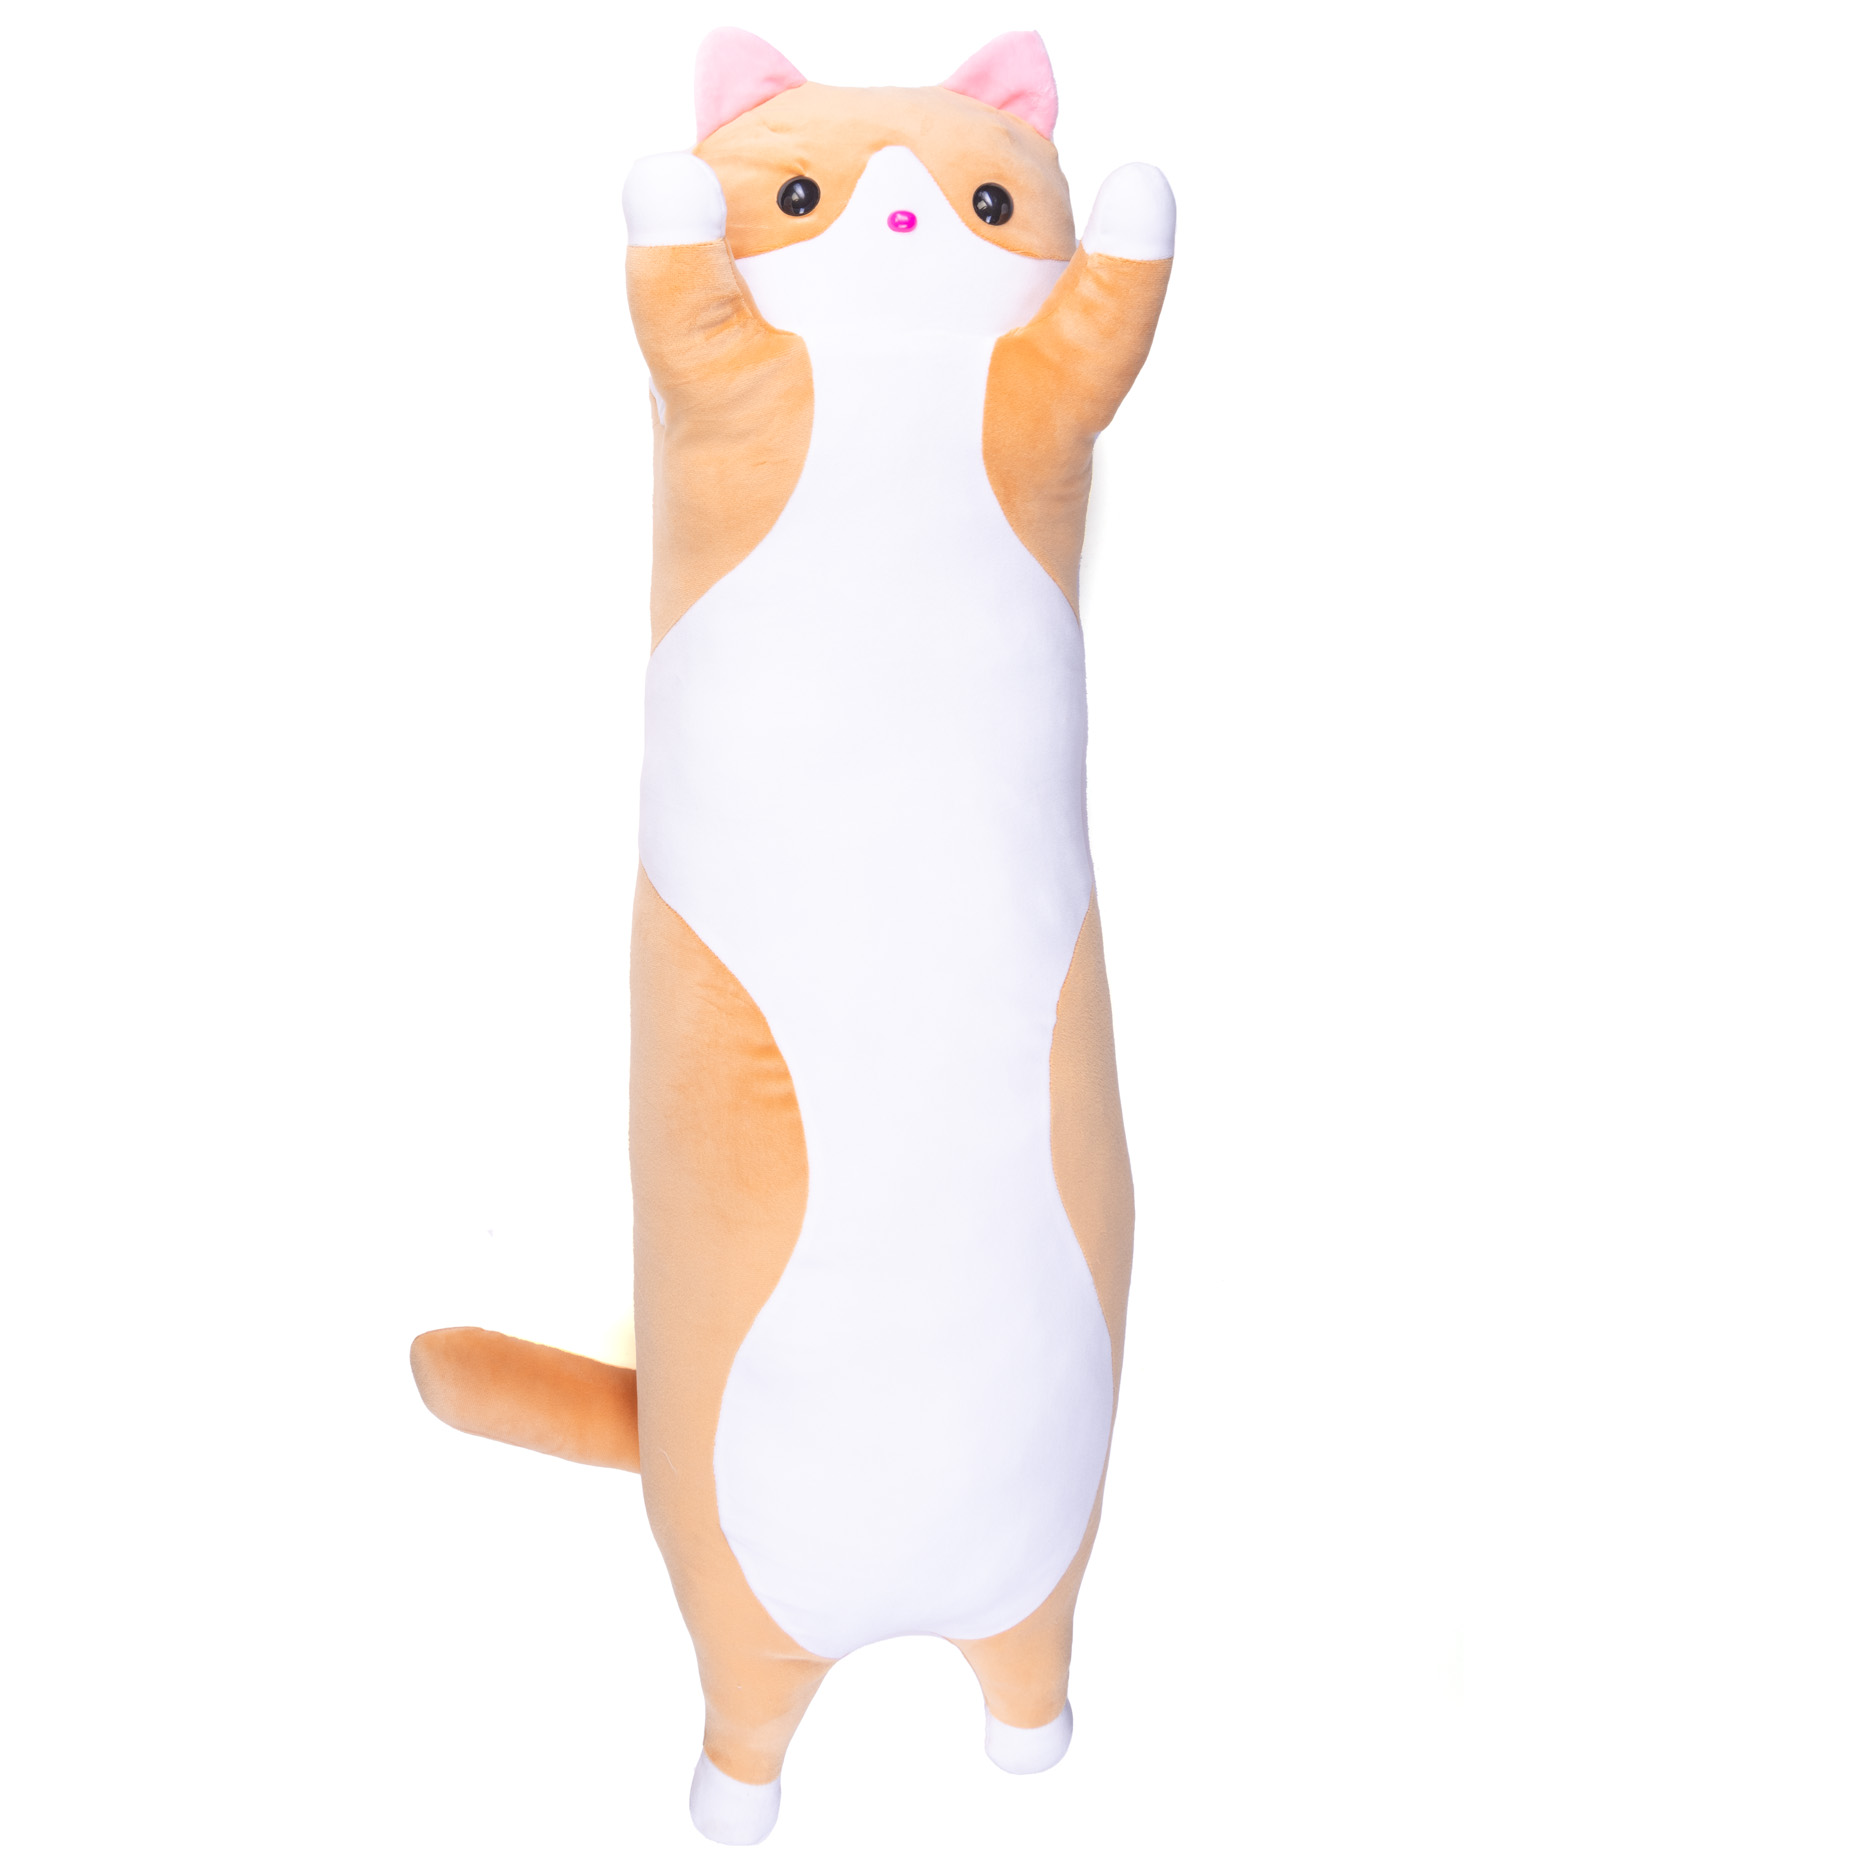 Мягкая игрушка Нижегородская игрушка Кот длинный, 46 см